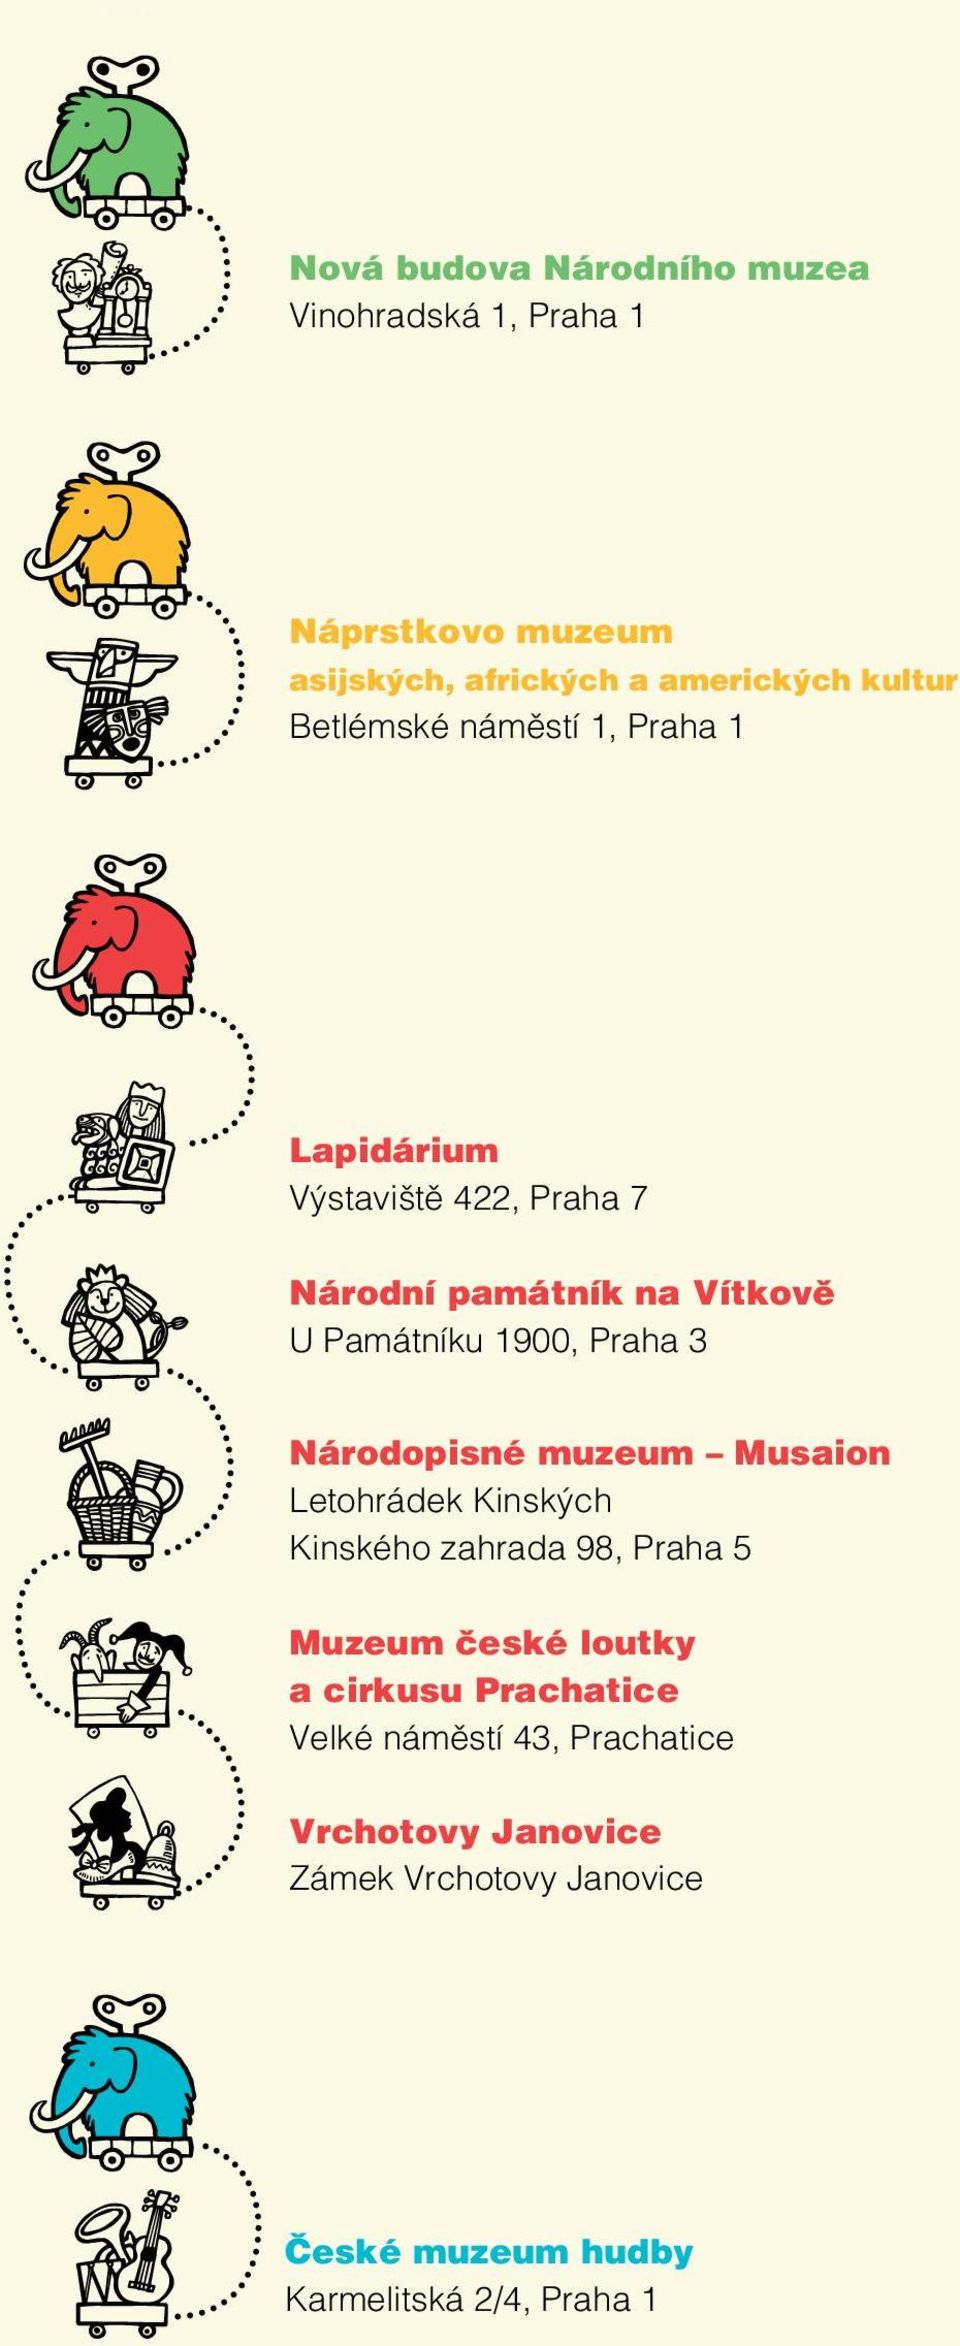 3 Národopisné muzeum Musaion Letohrádek Kinských Kinského zahrada 98, Praha 5 Muzeum české loutky a cirkusu